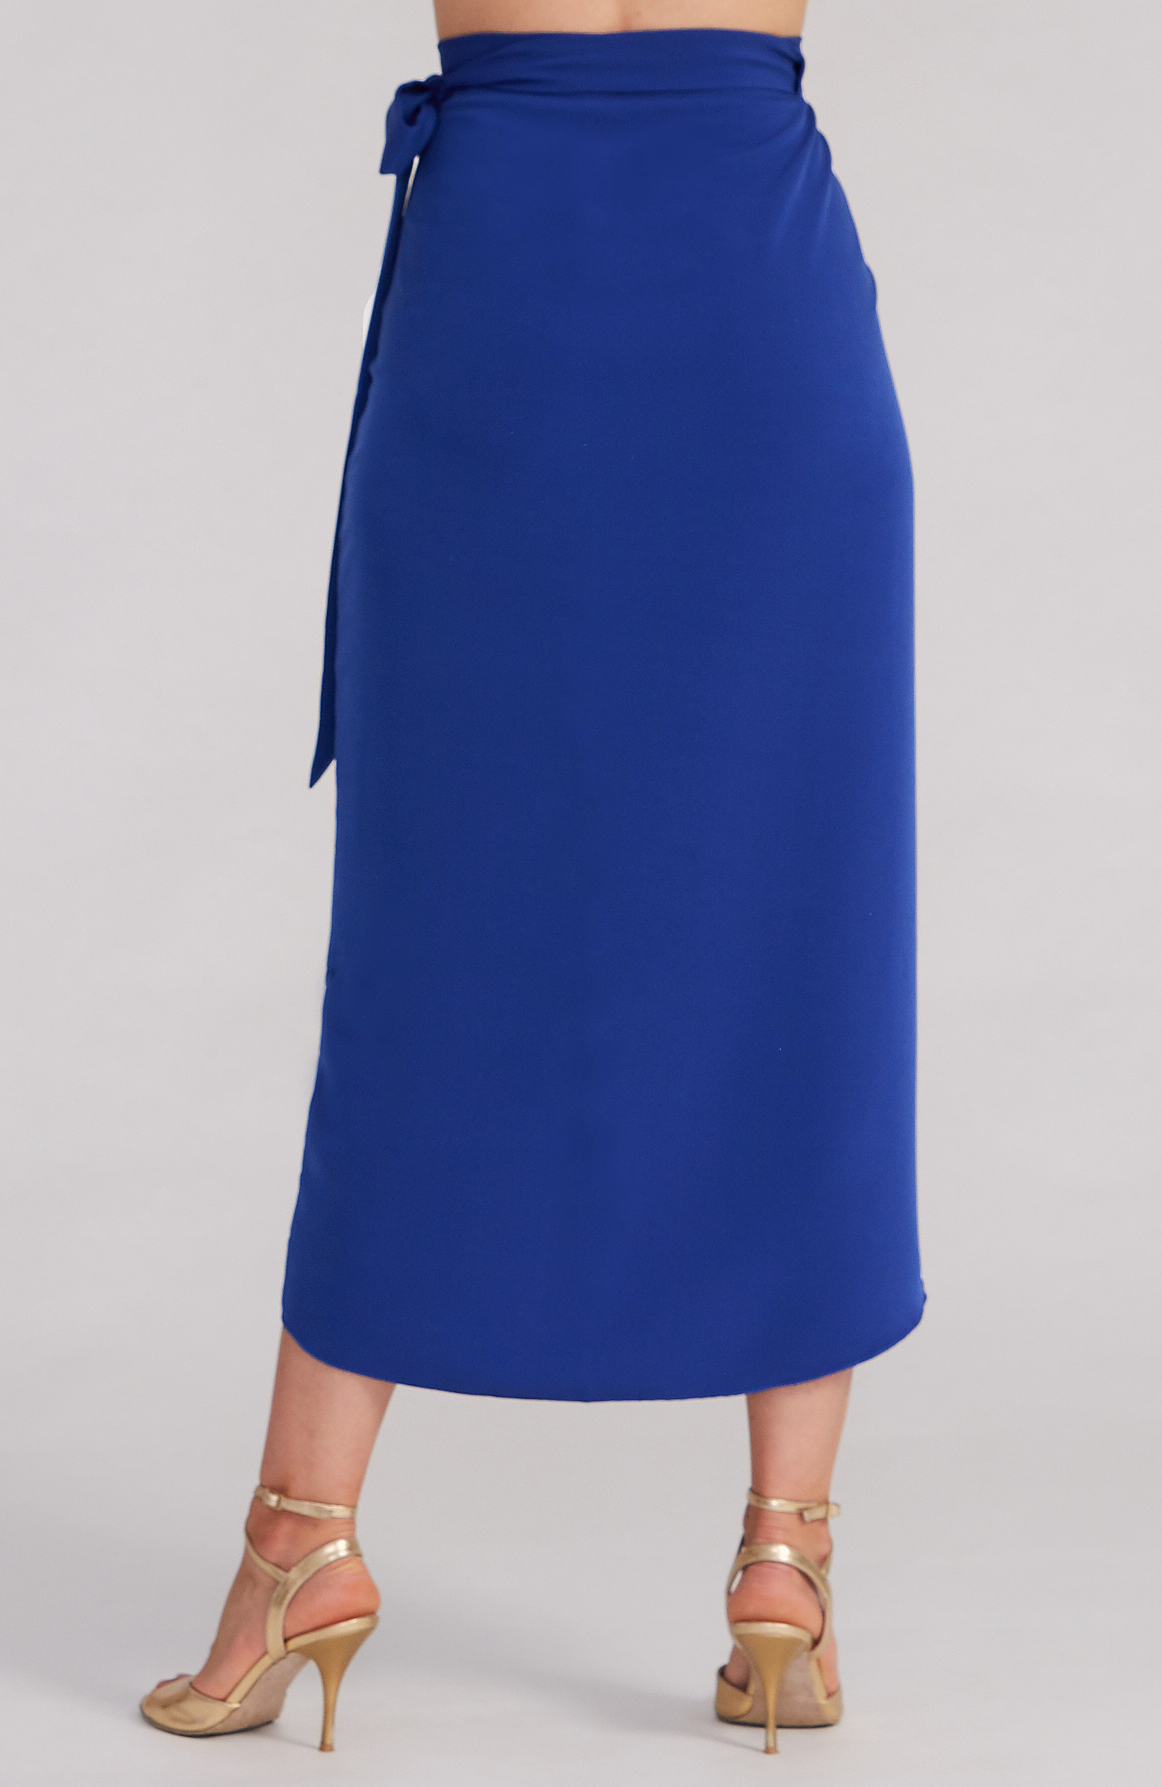 JULIET - Royal Blue Wrap Skirt